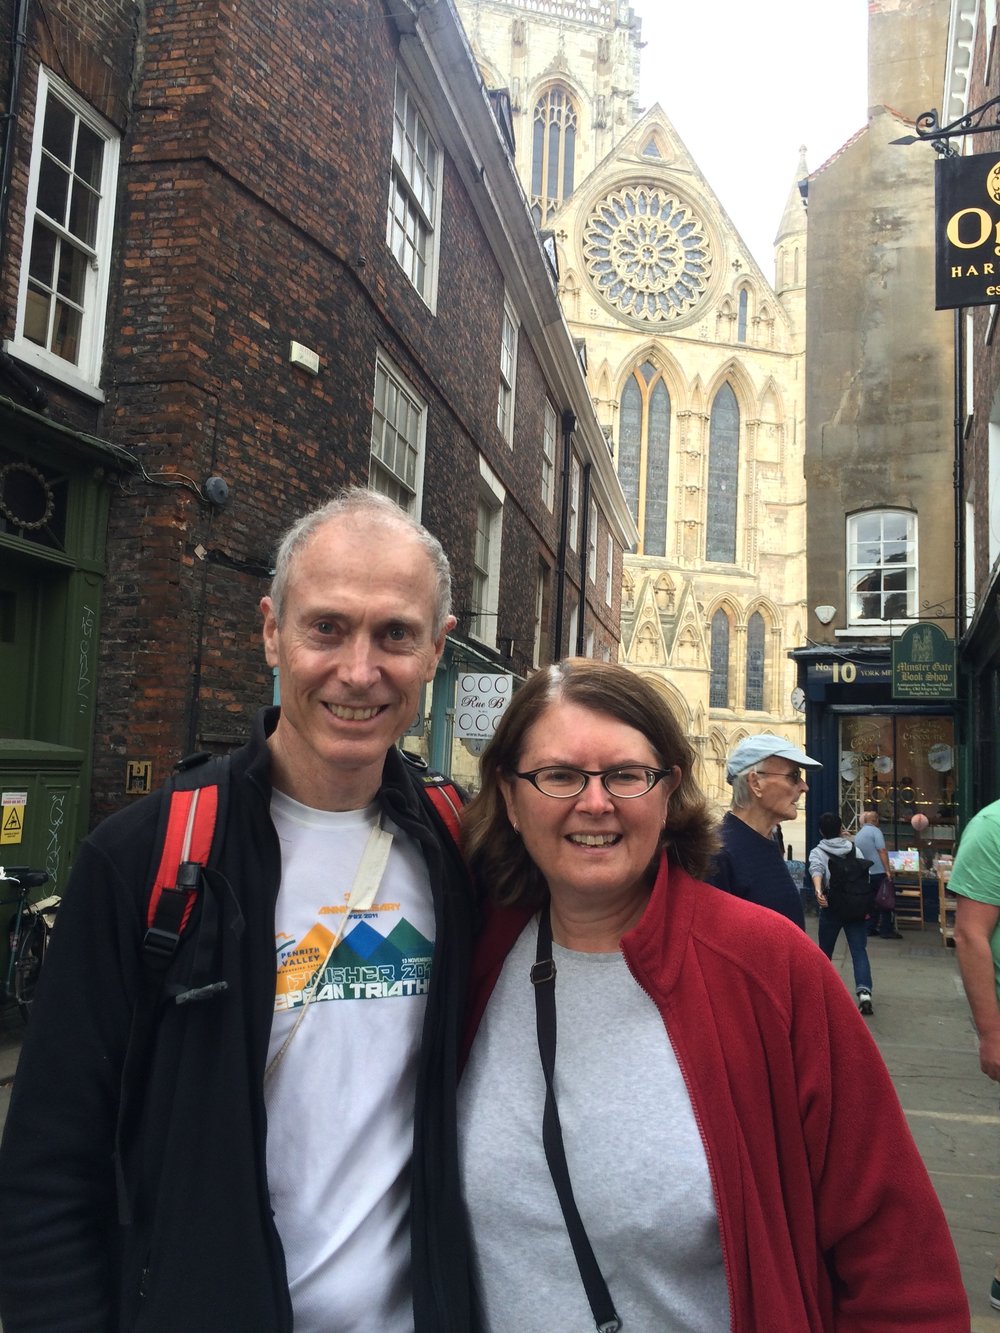 Paul and Karen in York